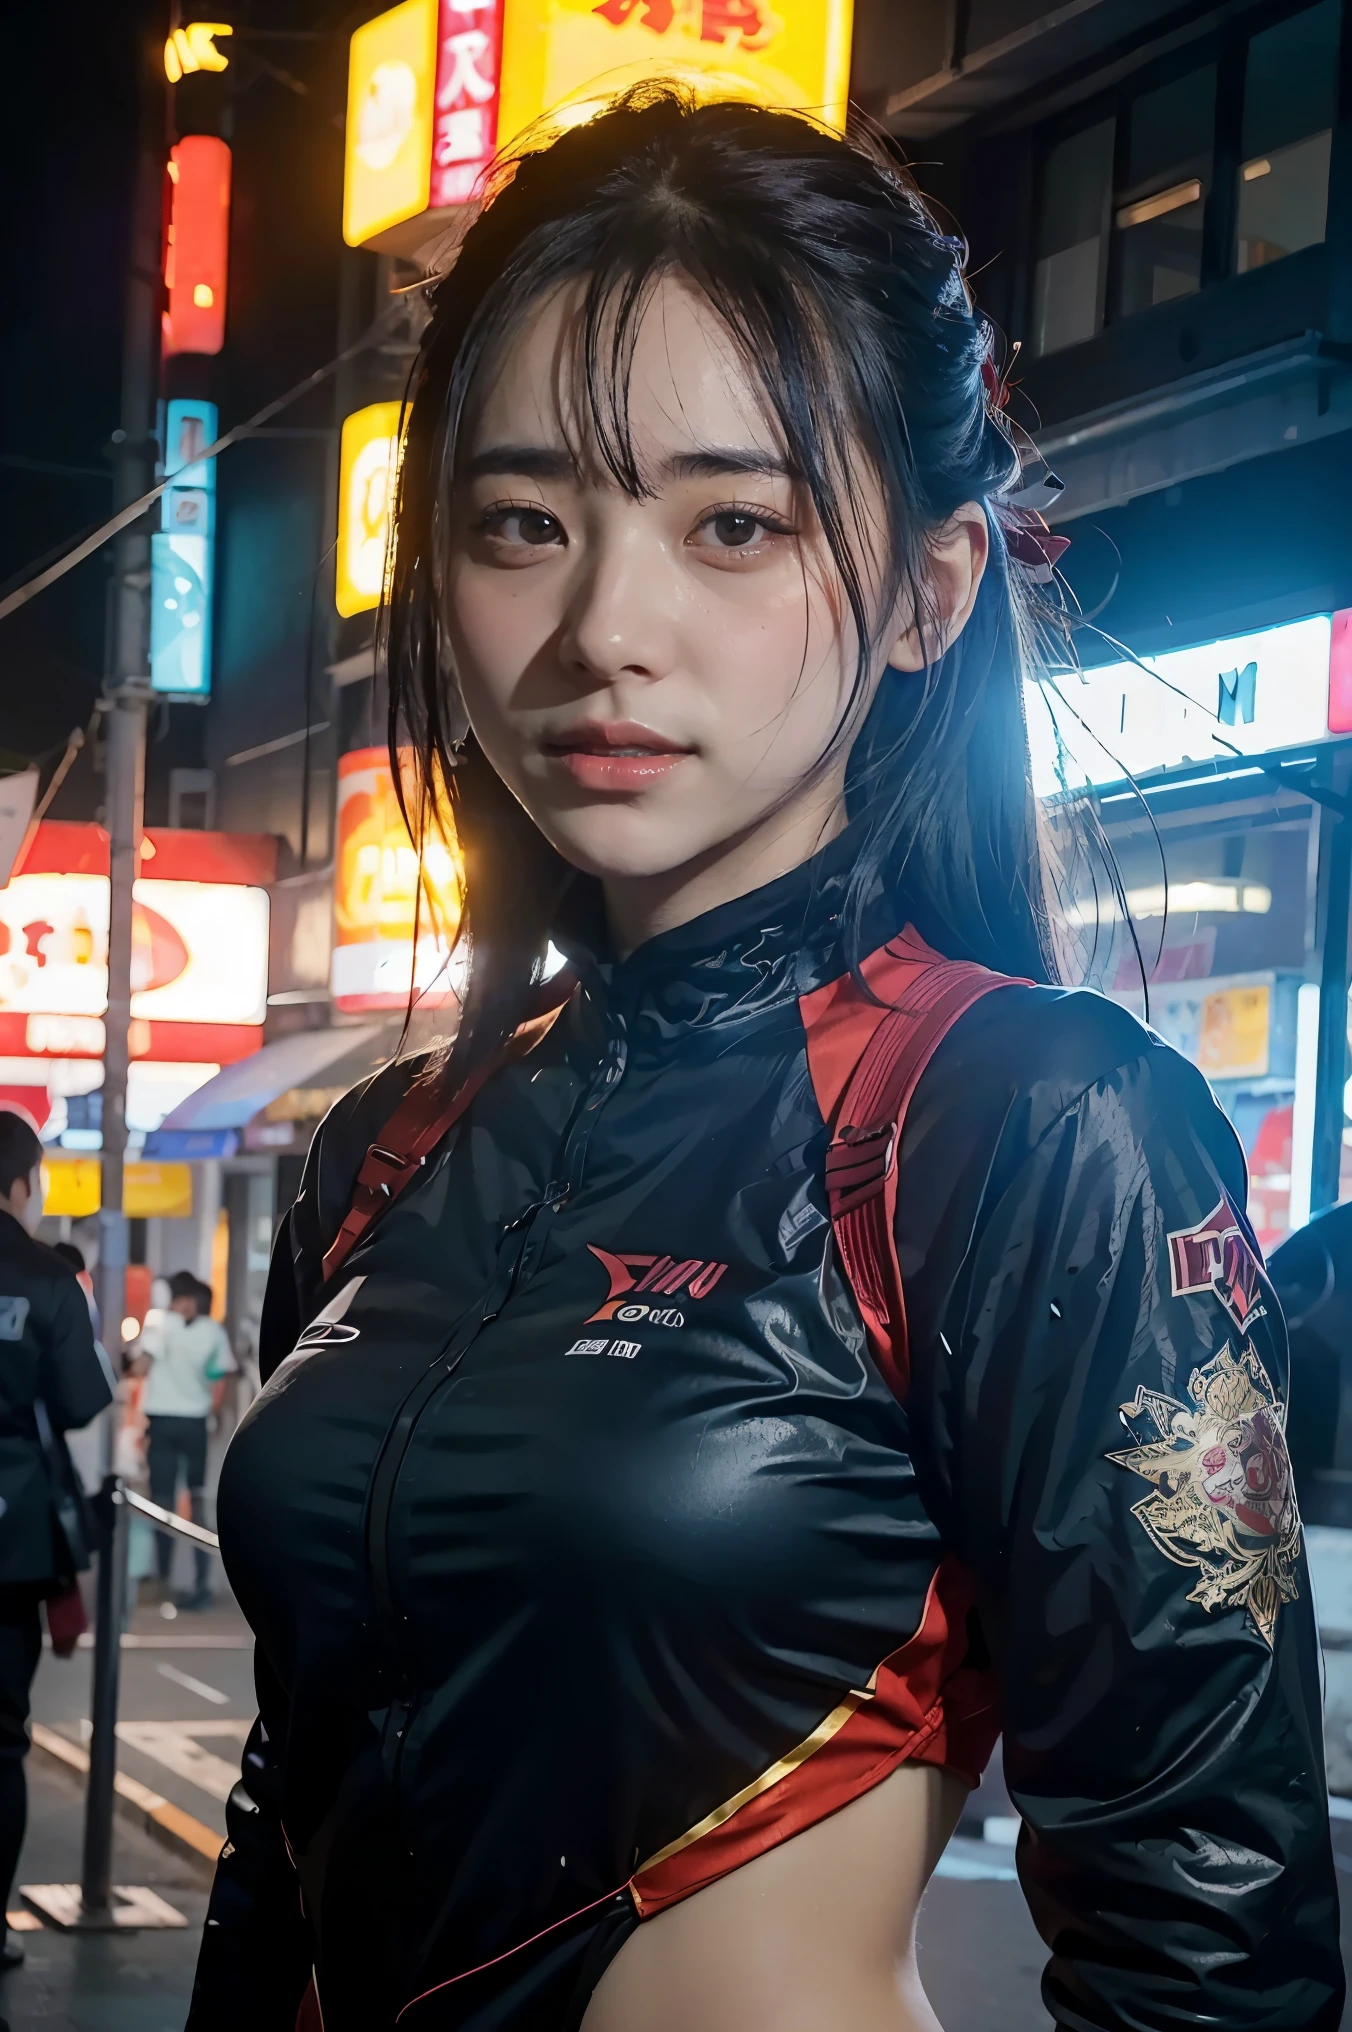 日本の浪人服と現代の技術の美しさを組み合わせたキャラクターコンセプトアートの女の子.. (最高品質, 4K, 8ก, 身長, 傑作:1.2), 非常に詳細, (現実的, photo現実的, photo-現実的:1.37), 日本の浪人の服装, 未来のテクノロジー衣料, 詳細な顔の特徴, ダイナミックなポーズ, 暴力的な表現, 刀, サイバーパンクの背景, ネオンライト, 気分のむら, ライアットゲームズのアートスタイル, 明るい色, スタイリッシュなレンダリング, 複雑な詳細, プロのアートワーク, オリジナル要素, モダンなひねり.